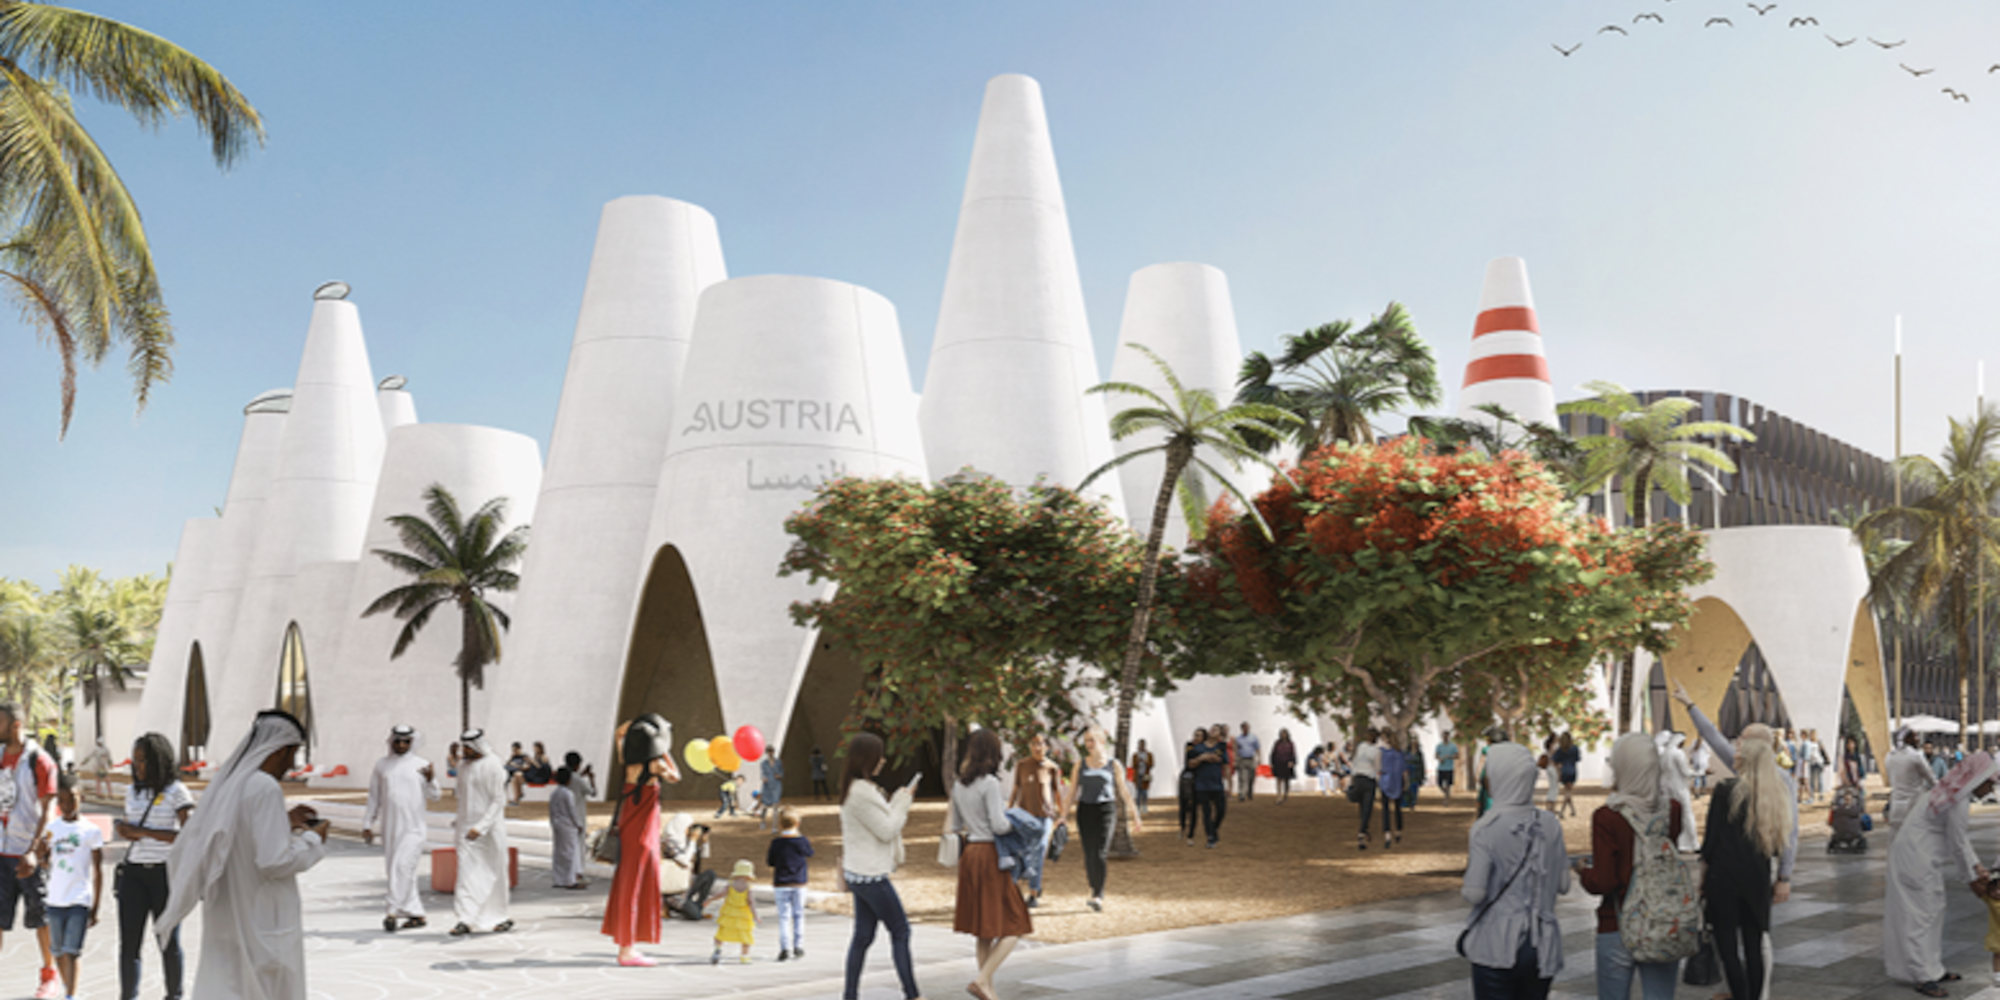 Austria makes sense @ "Expo 2020 Dubai"